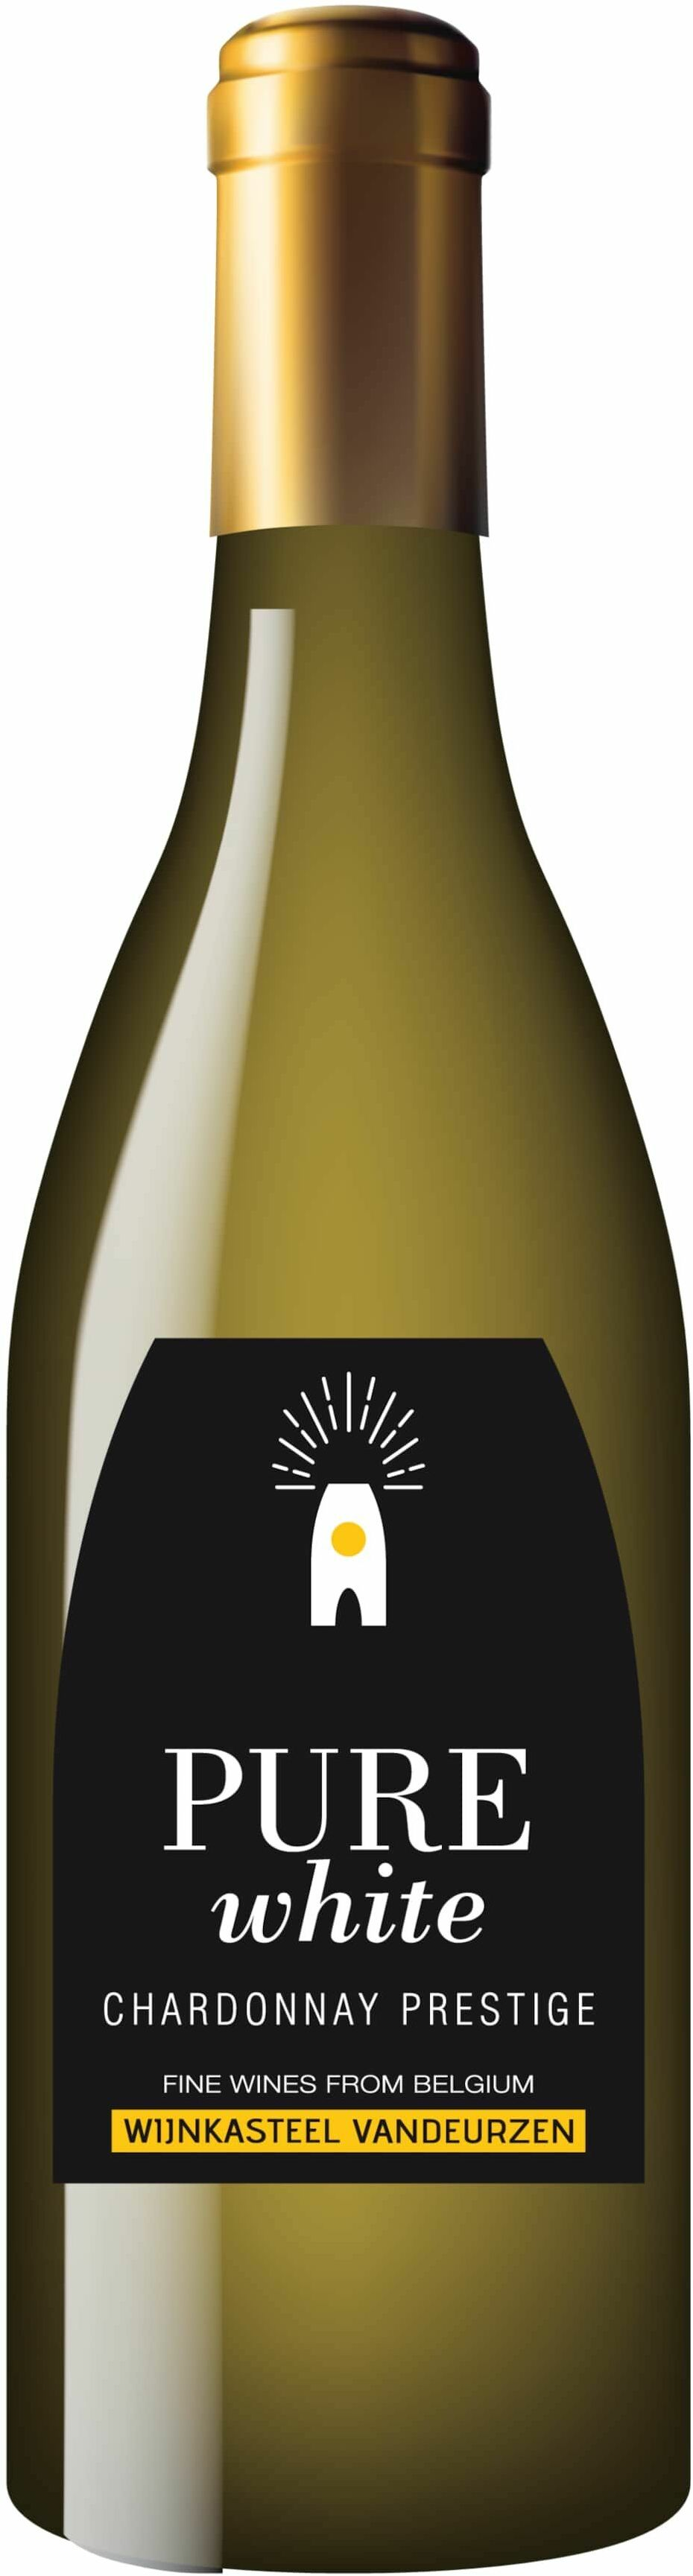 Vandeurzen Chardonnay Prestige 'Pure White' 2019